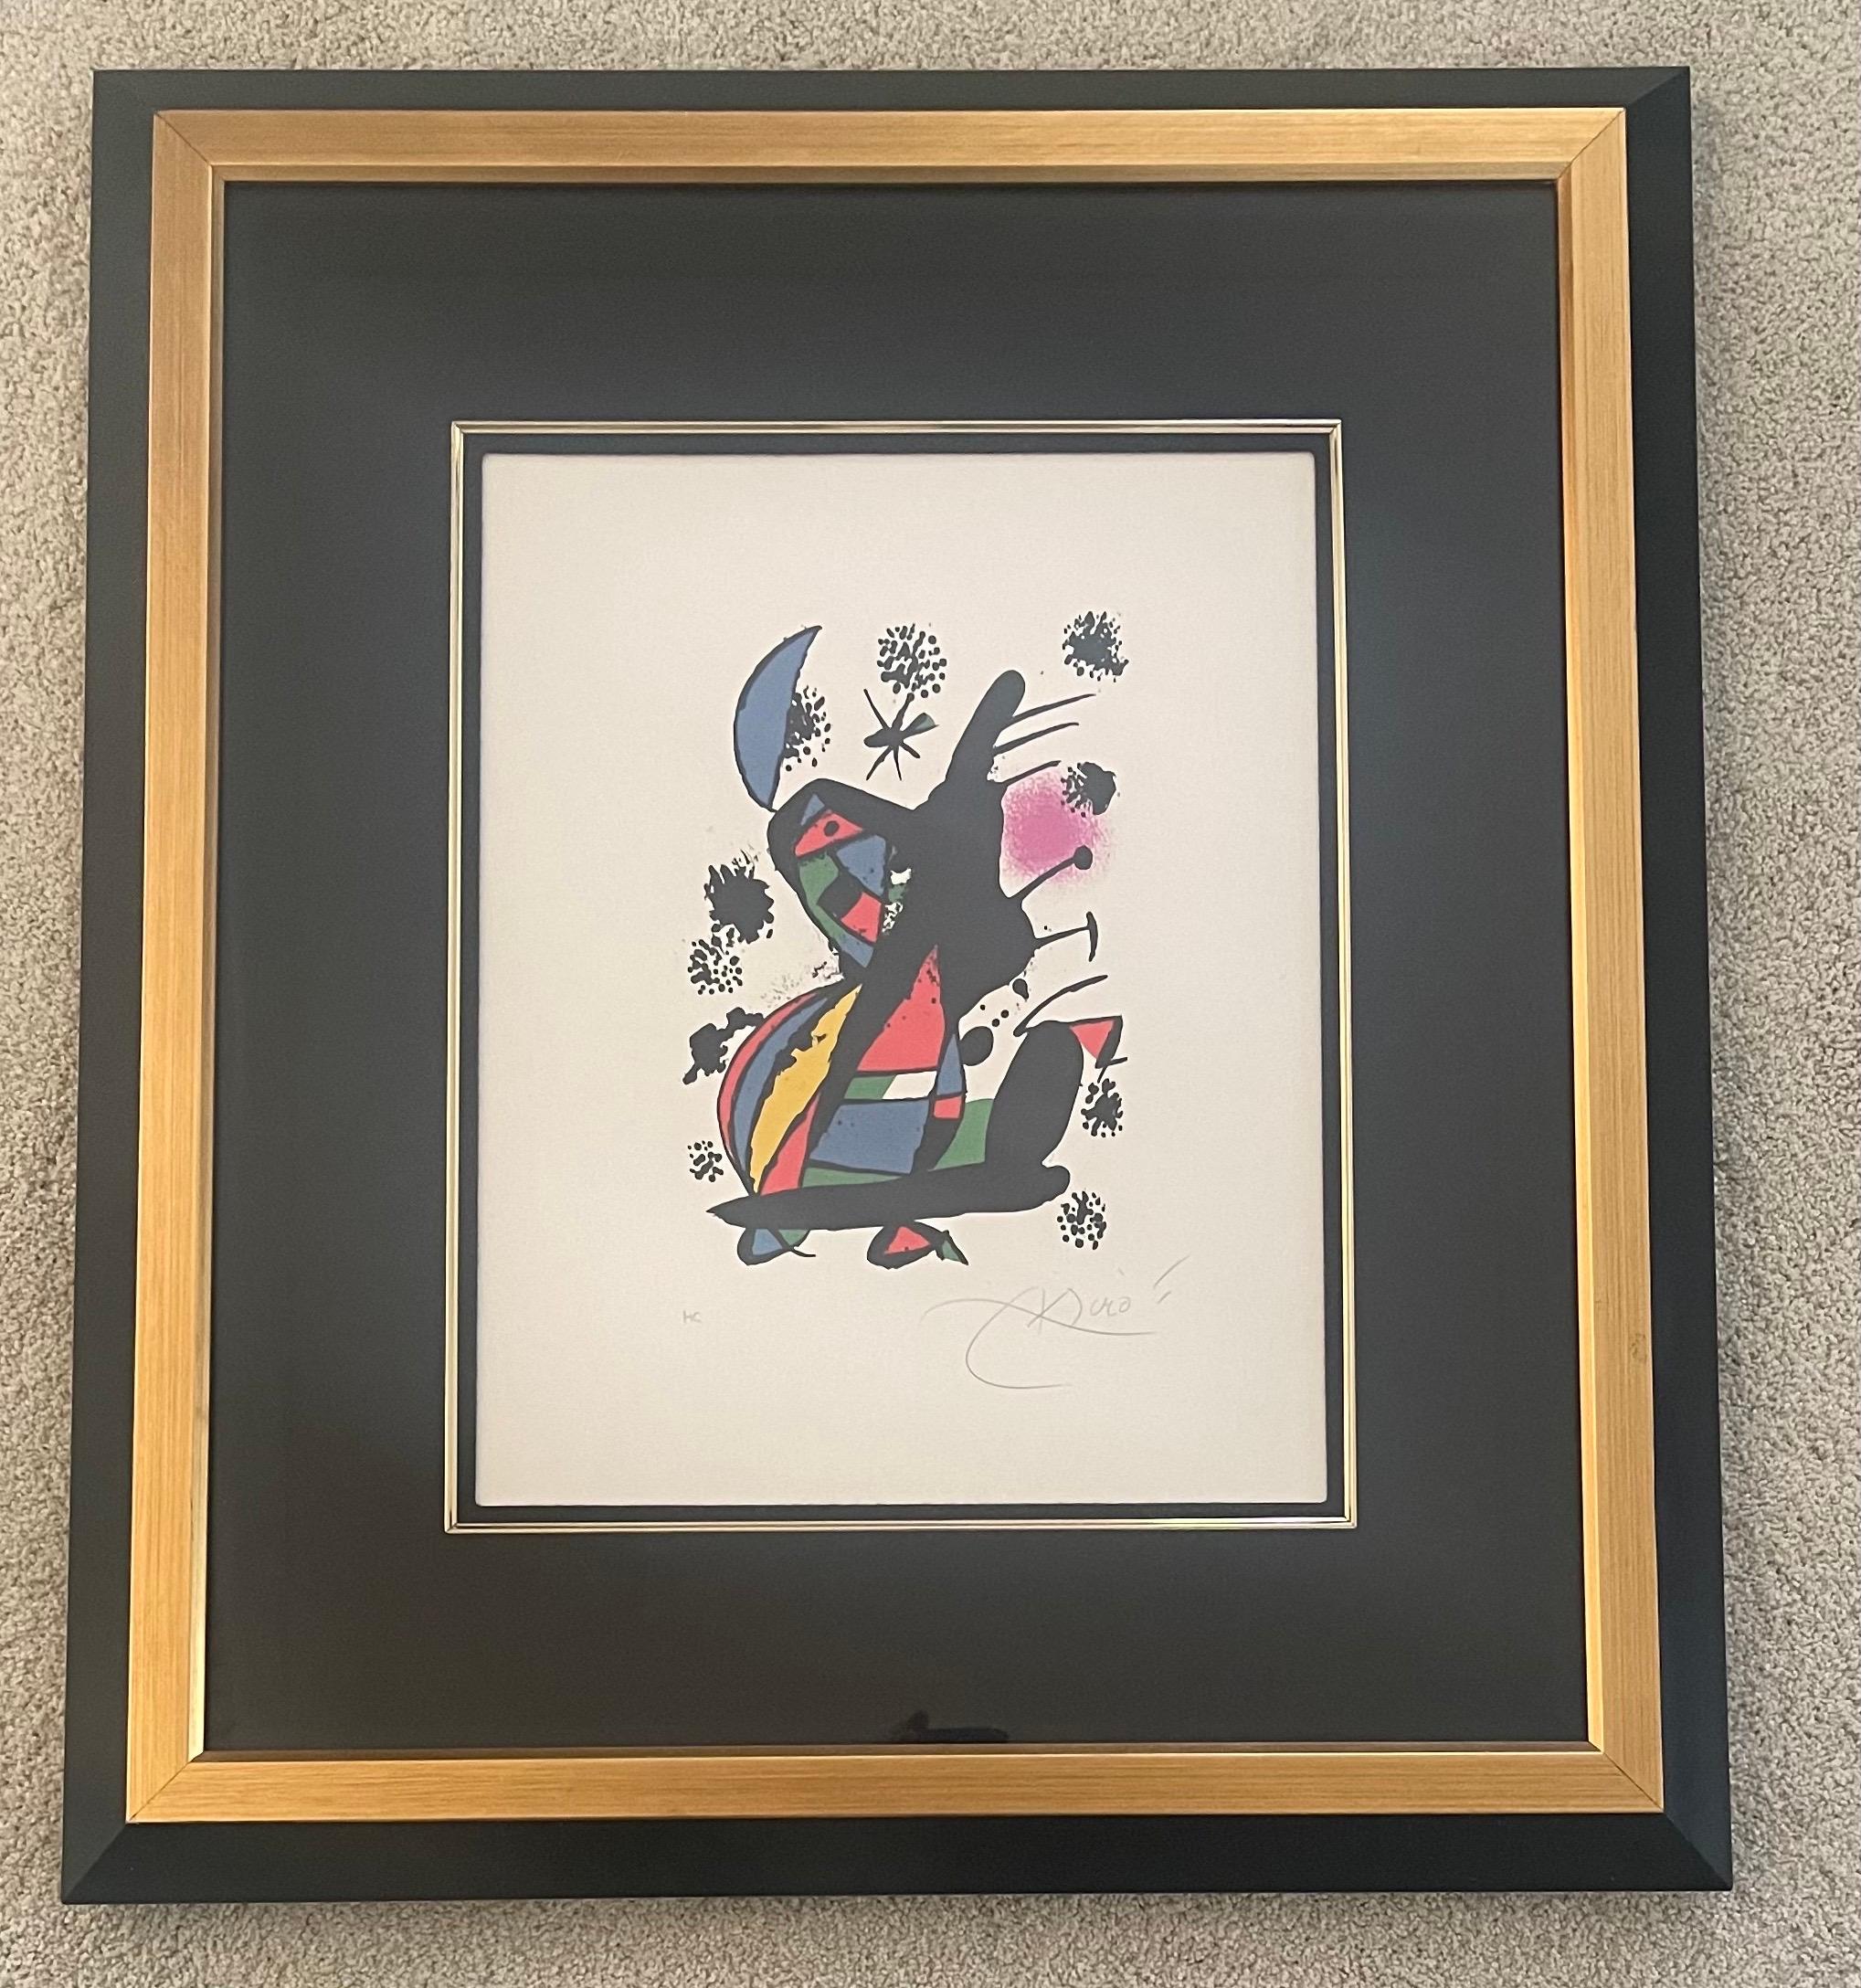 Belle lithographie abstraite contemporaine en couleurs signée par Joan Miró en bas à droite, vers les années 1960. L'image mesure 13,5